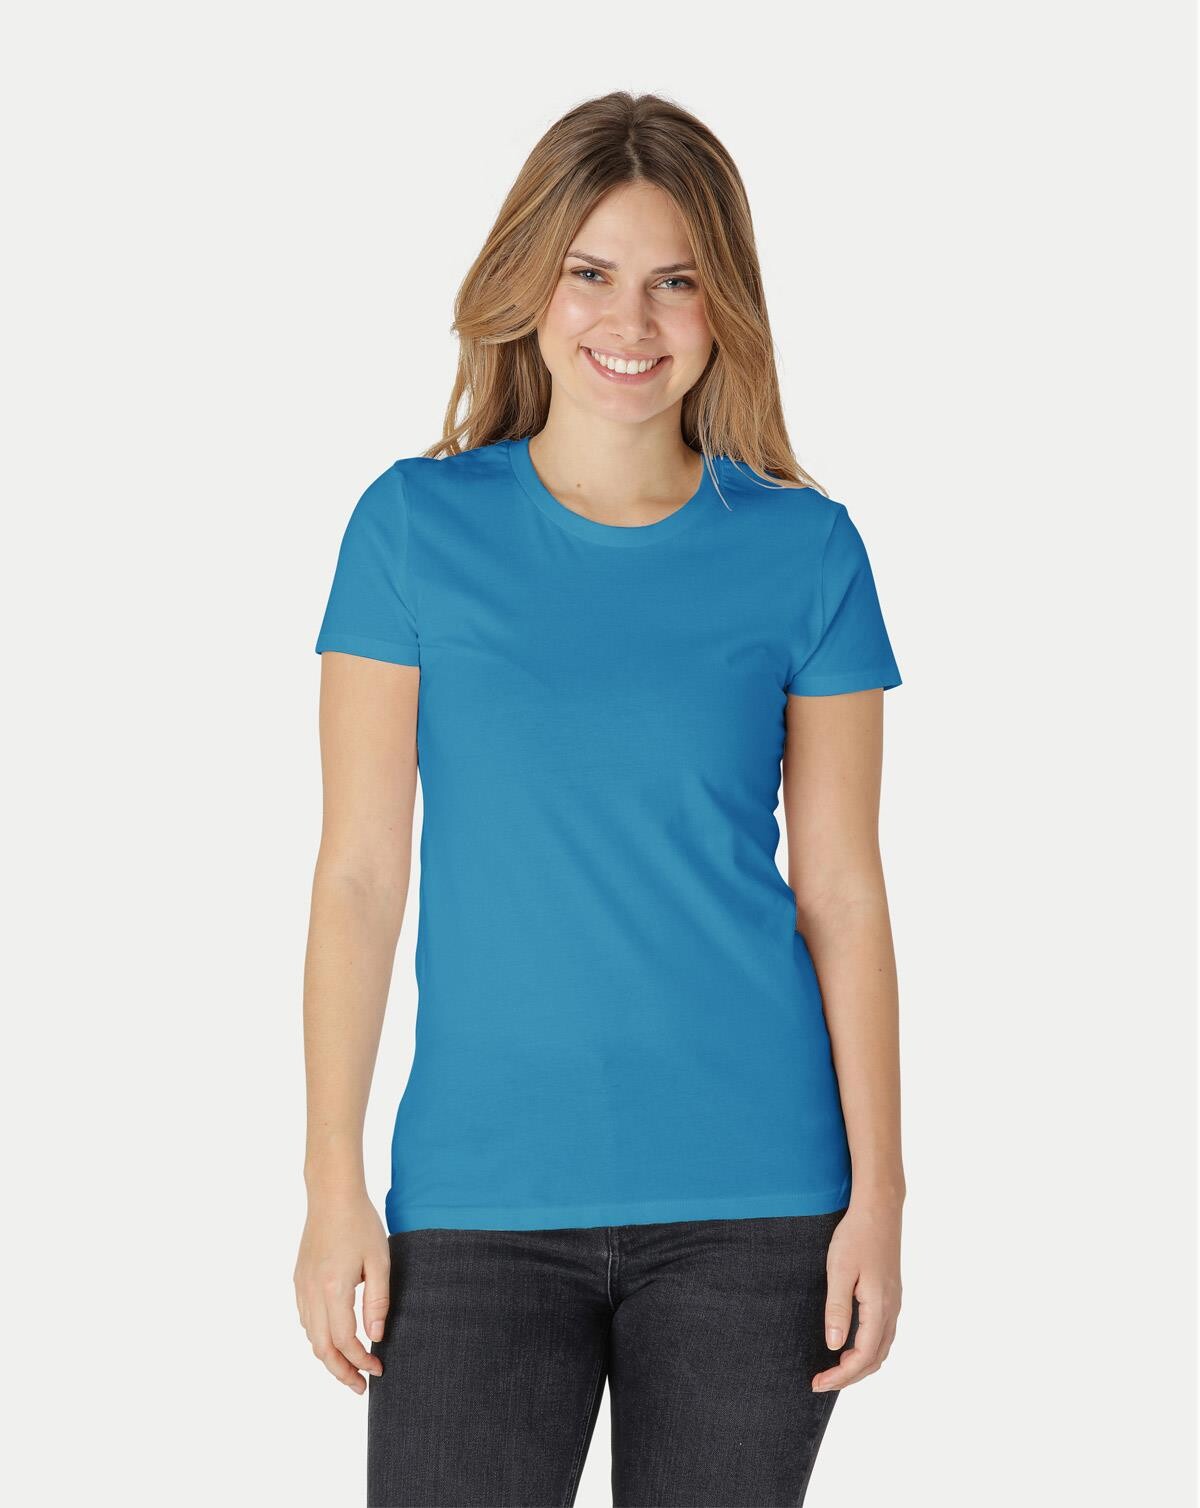 Neutral Organic - Ladies Fitted T-shirt (Safir, 2XL)